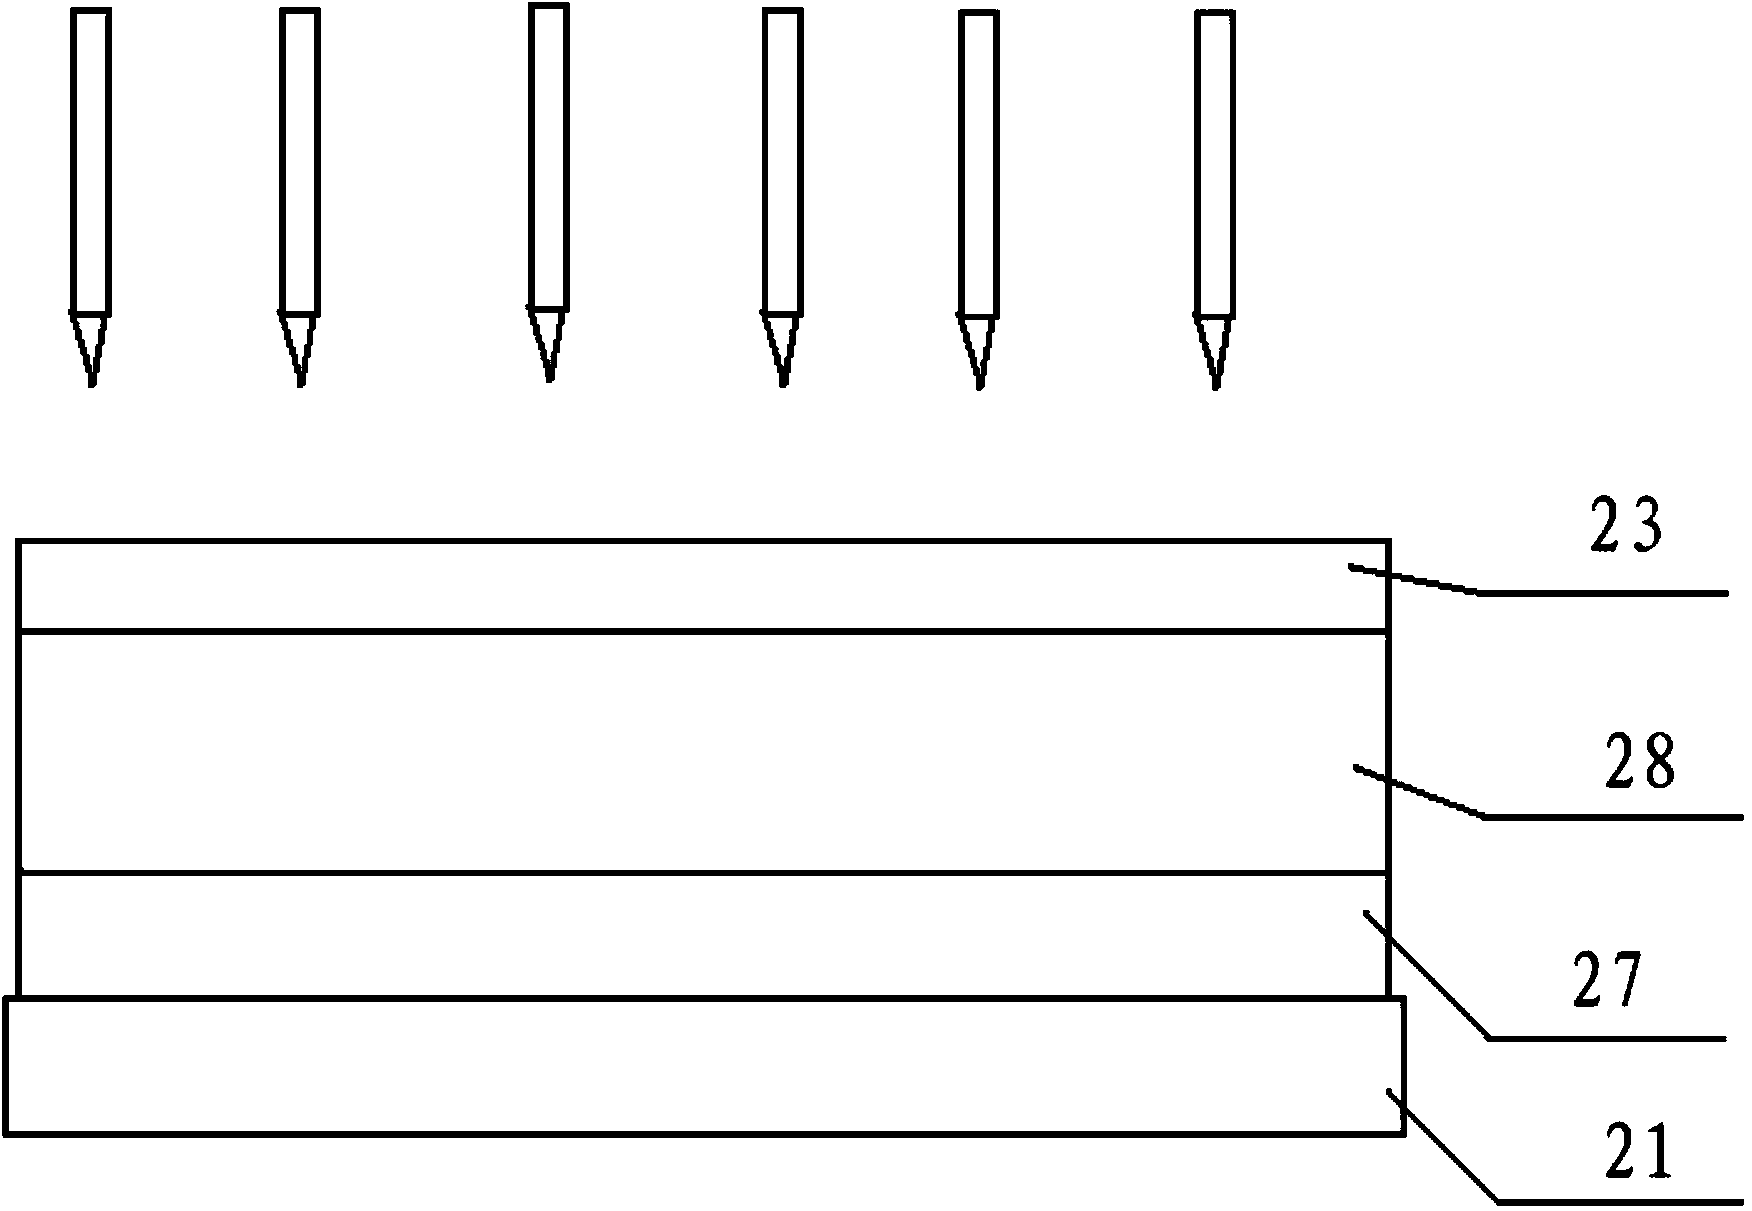 Quasi molecule laser annealing apparatus and preparation method of low-temperature polysilicon thin film